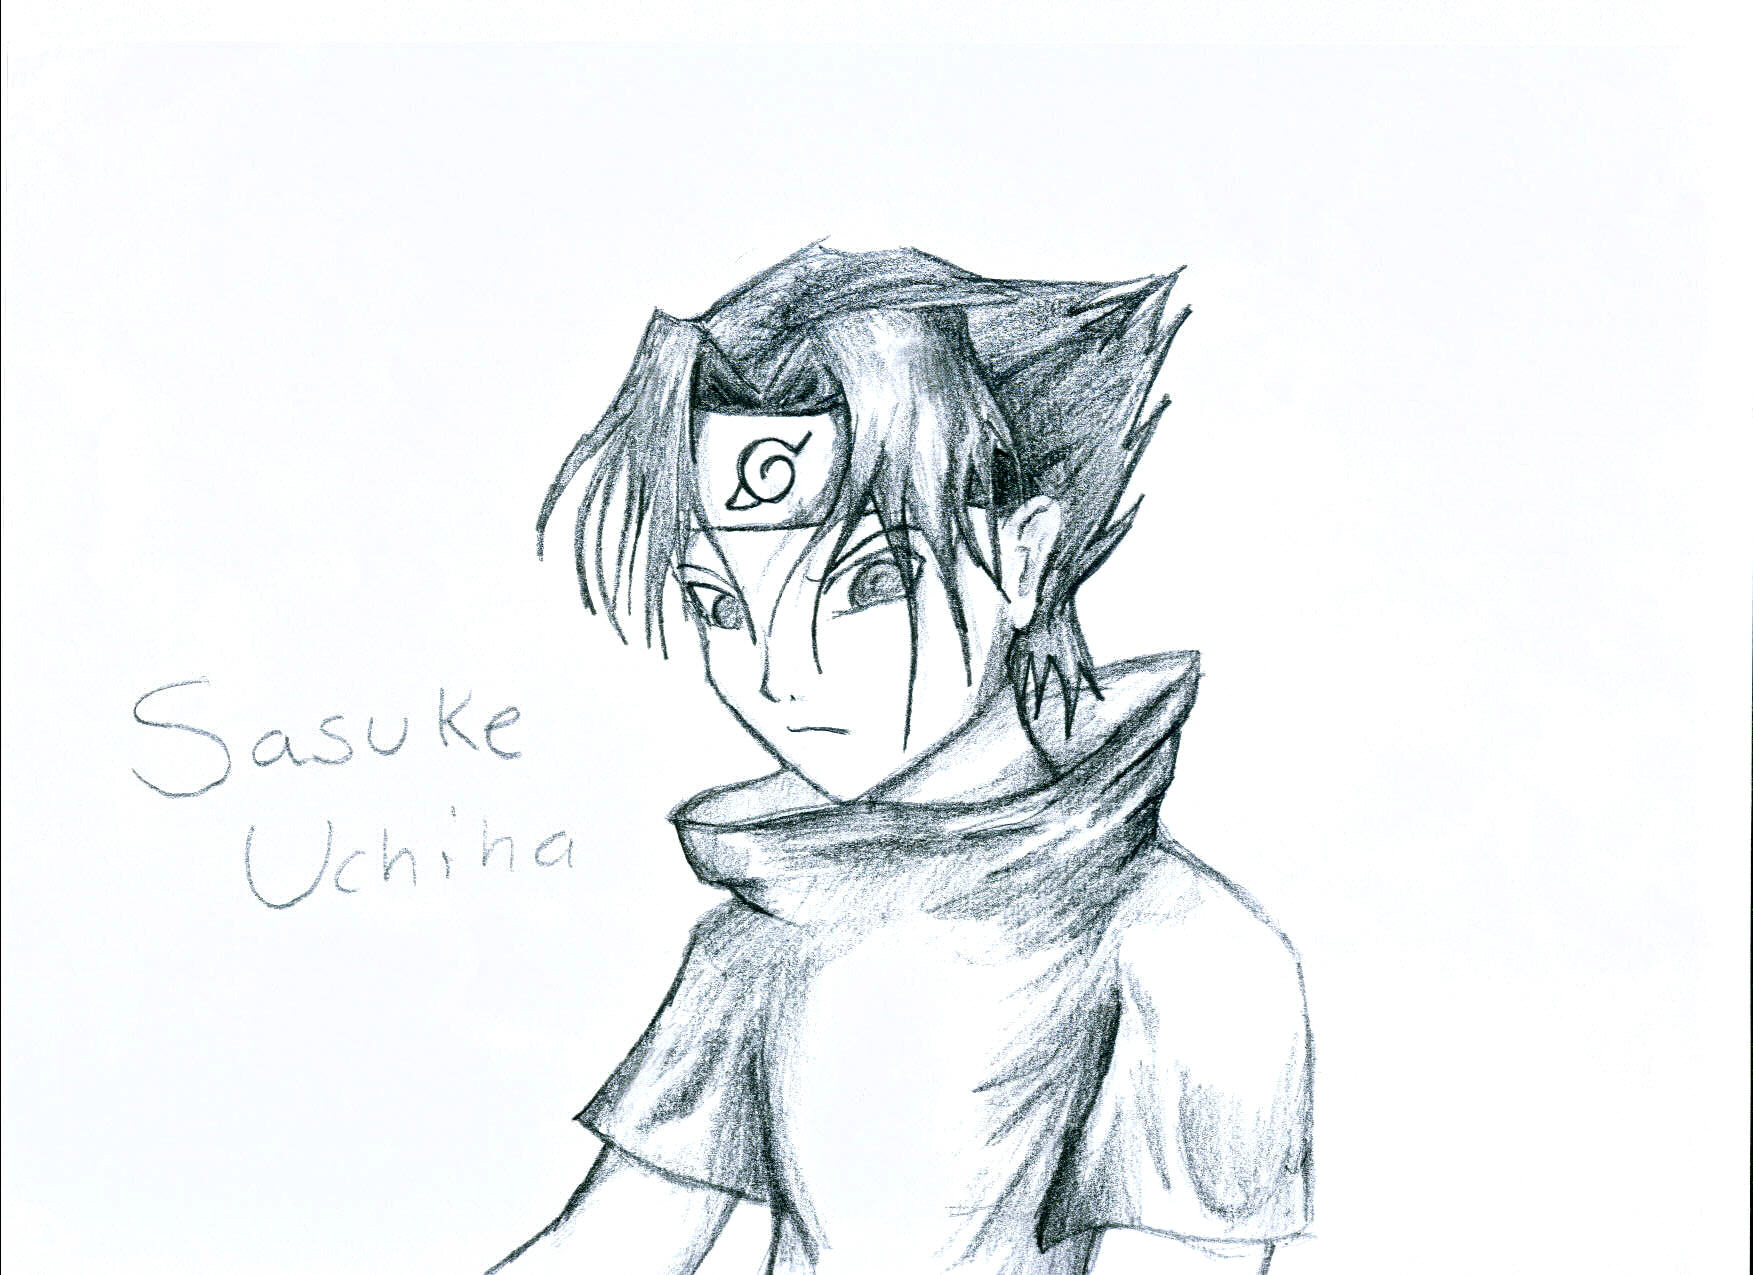 Sasuke Uchiha by MariksBeloved